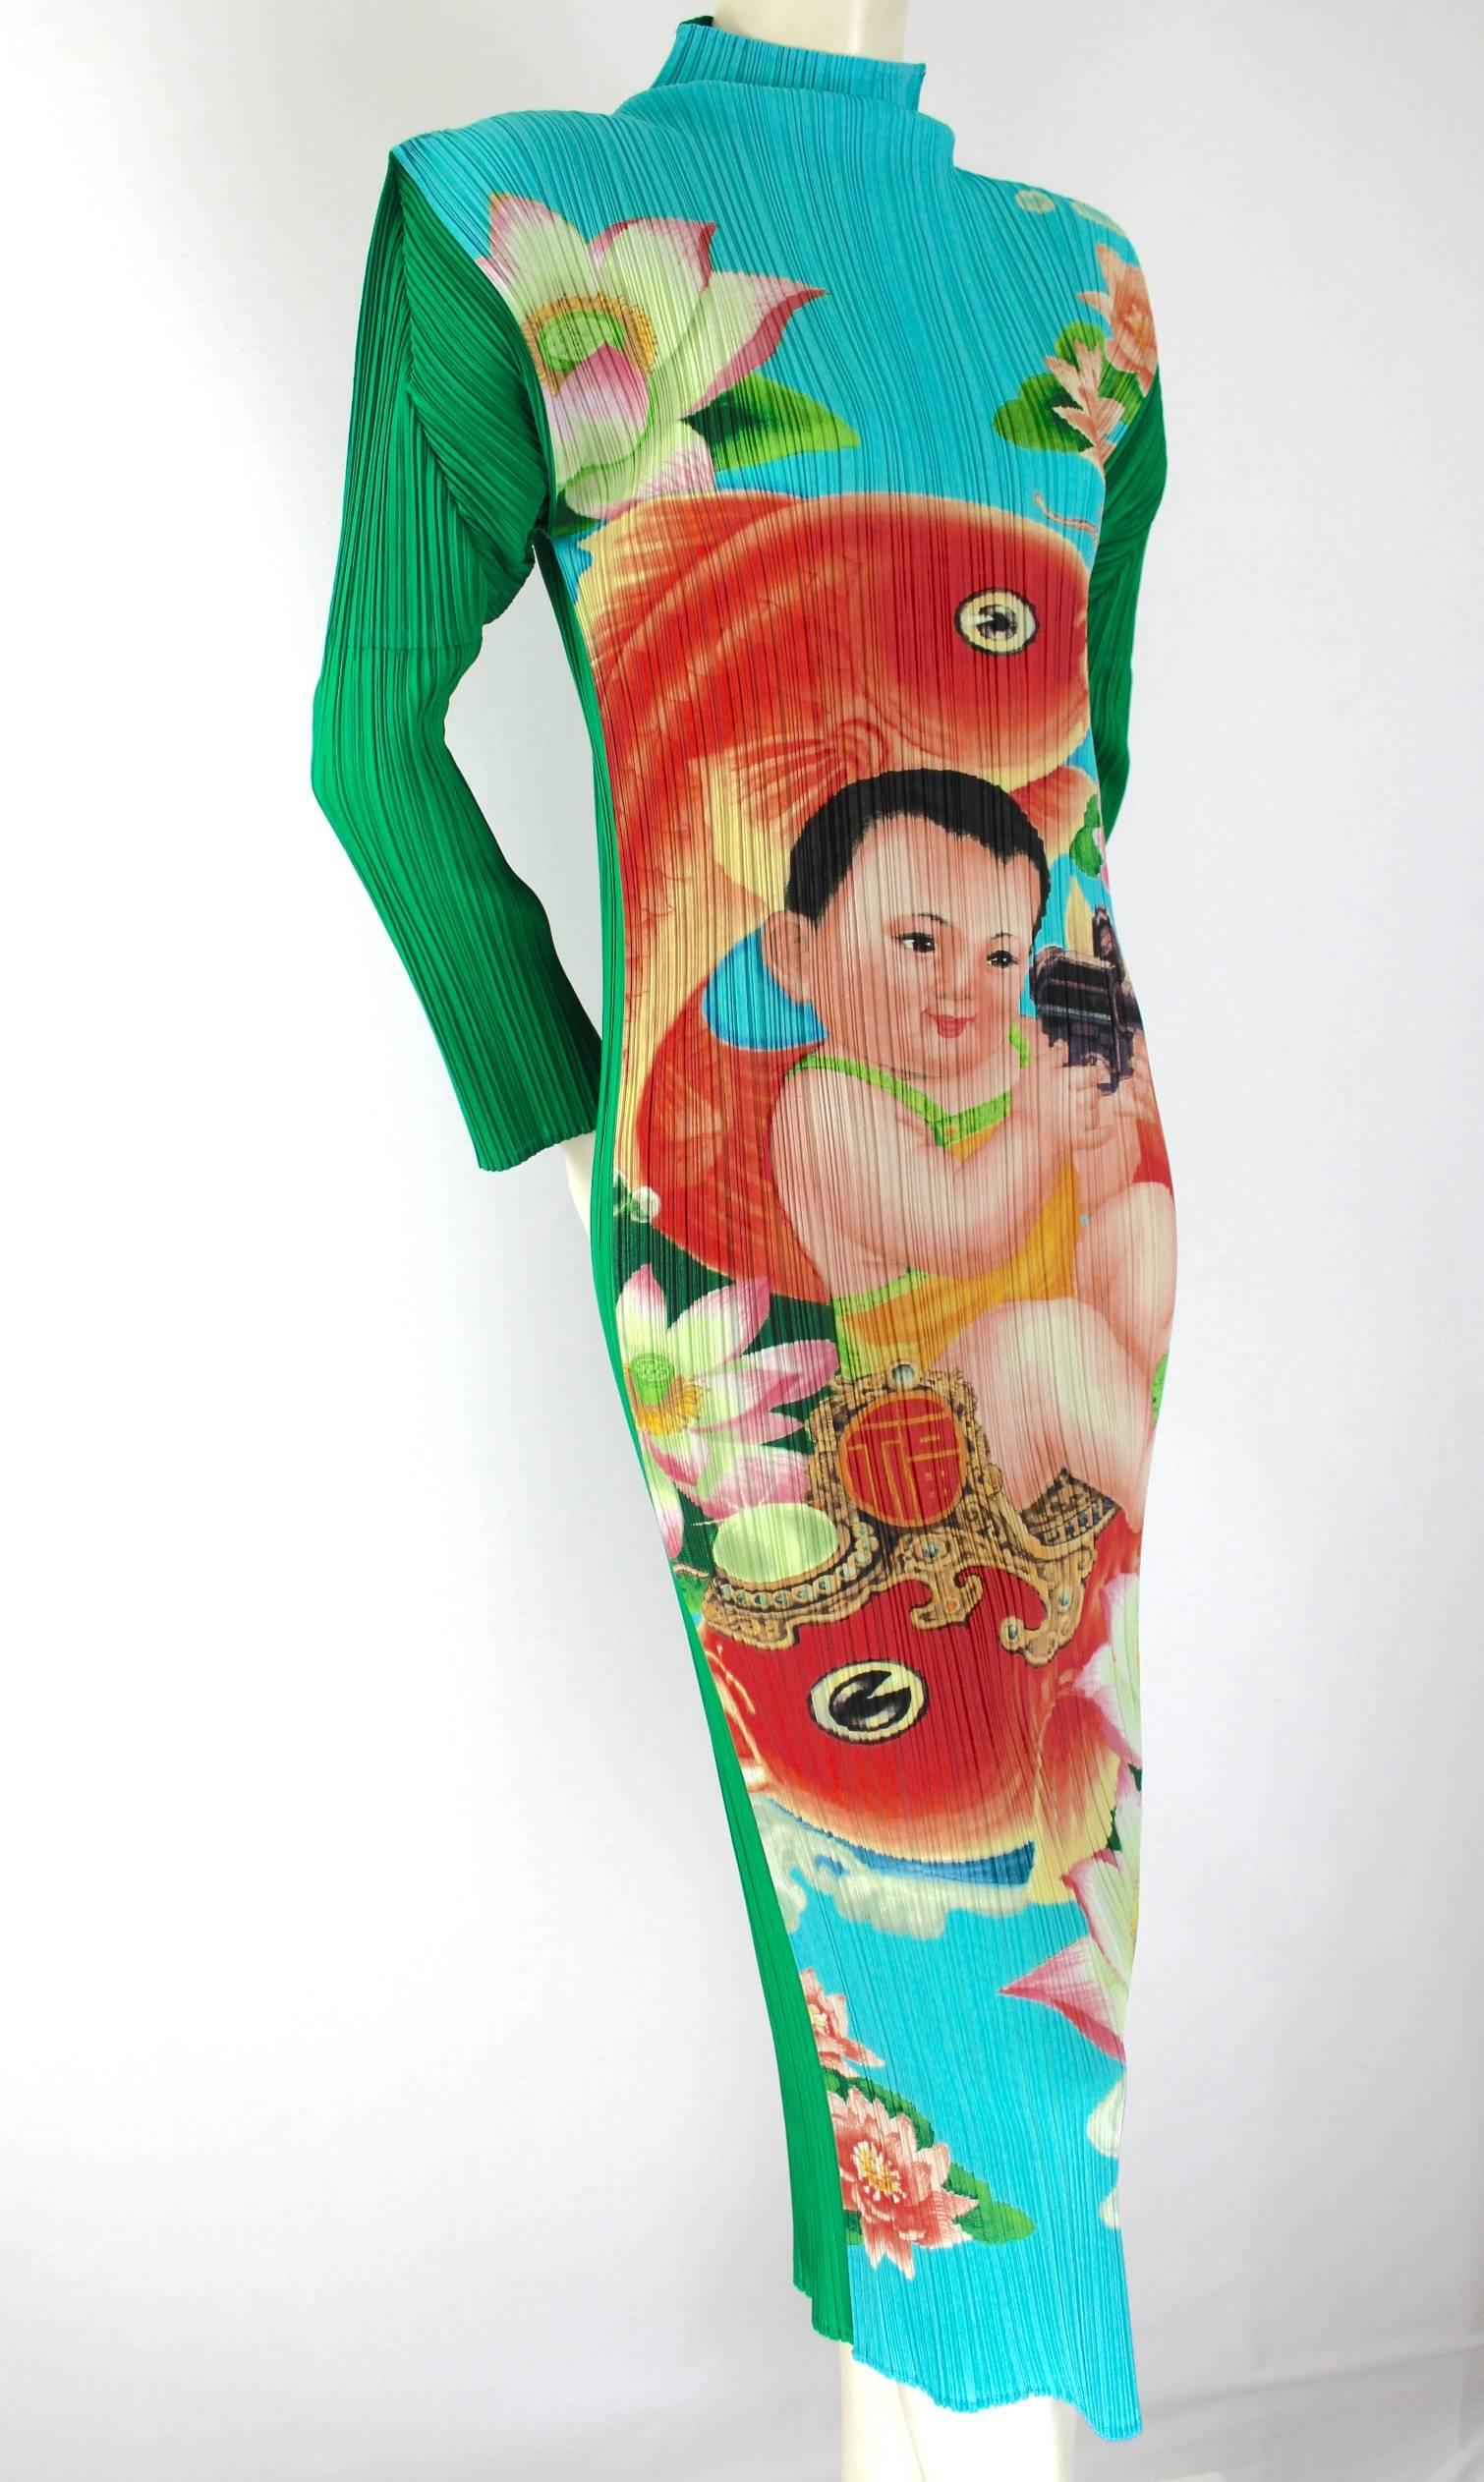 Rare Issey Miyake Machine Gun Baby Dress
Excellent Condition
Labelled Size 3